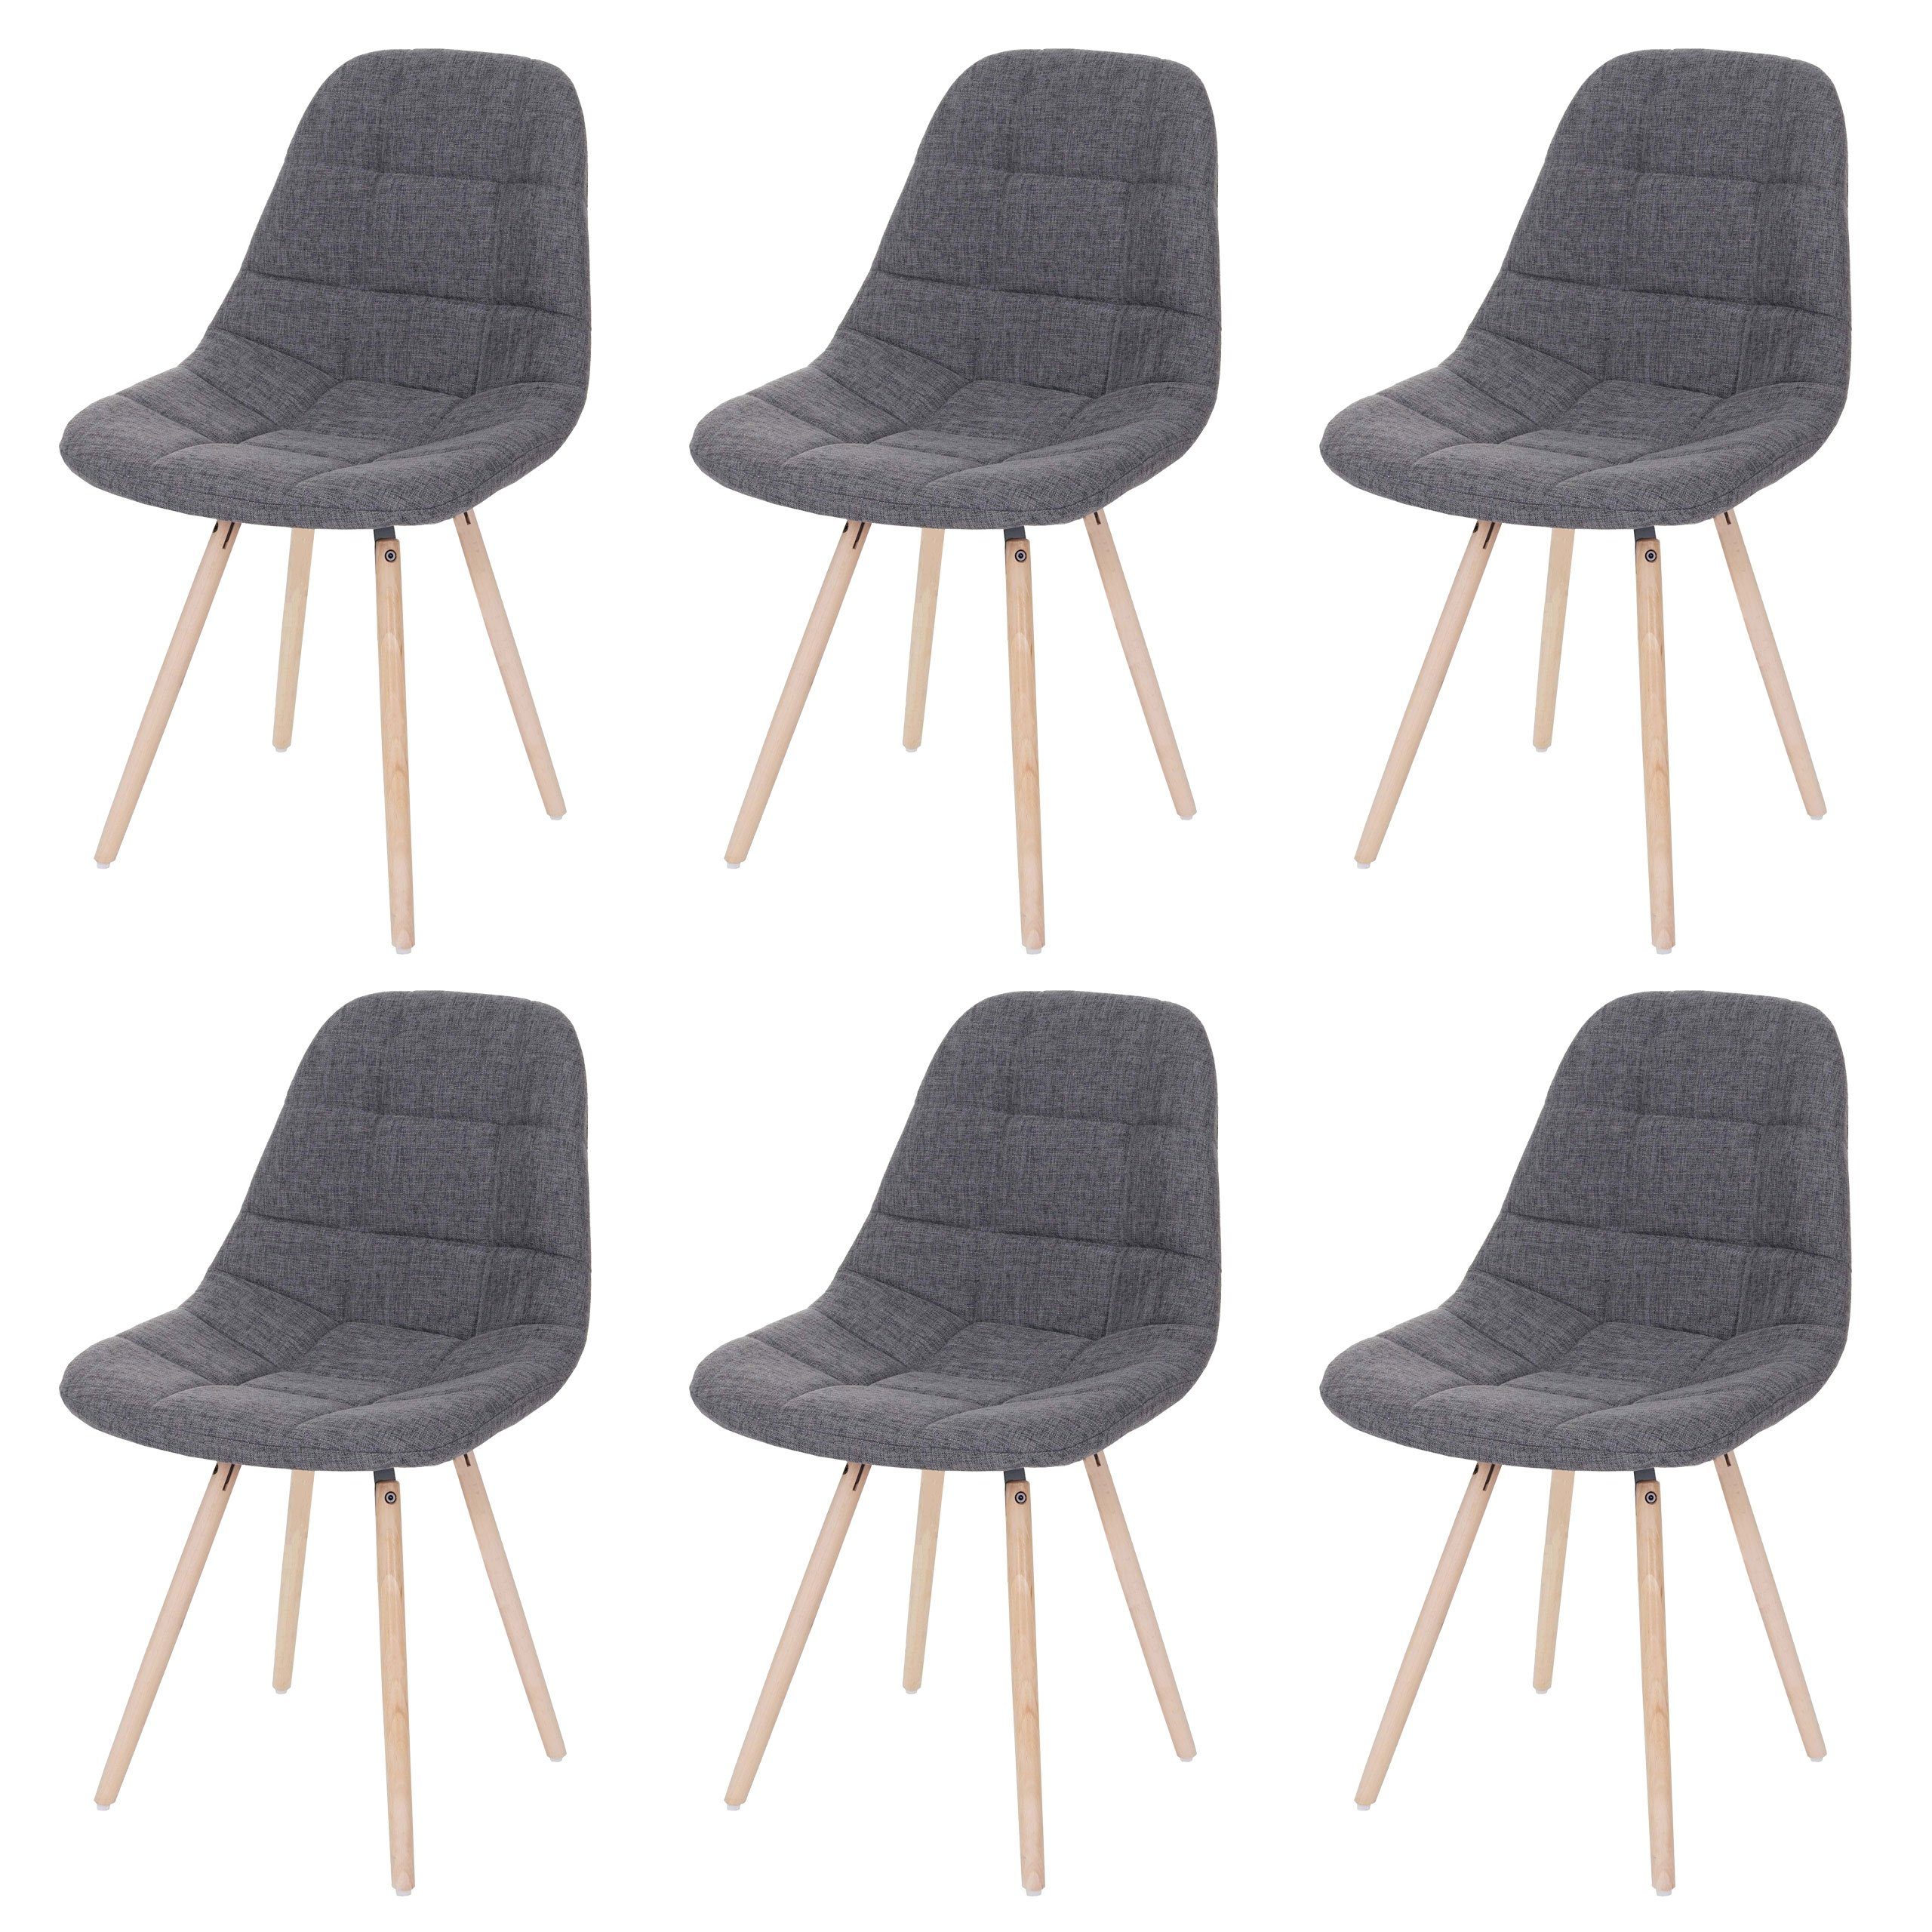 MCW Esszimmerstuhl MCW-A60 II-6 (Set, 6 St), 6er-Set, Kunststoffuntersatz unter den Füßen, Bequeme Sitzpolsterung | Stühle